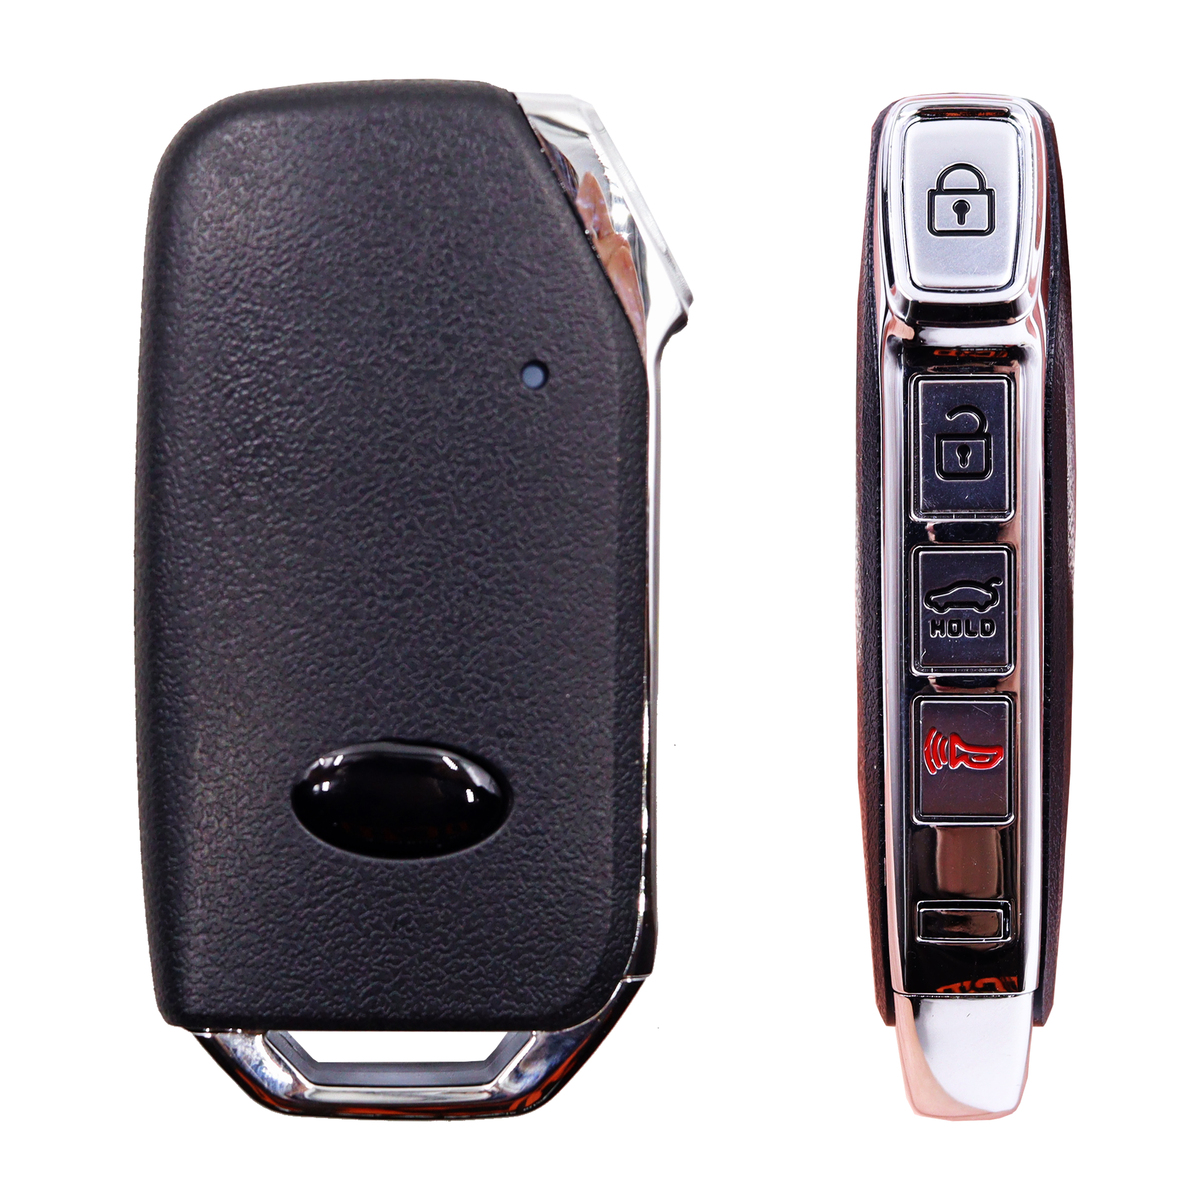 Kia Compatible Stinger 4 button Smart remote 433 Mhz FSK